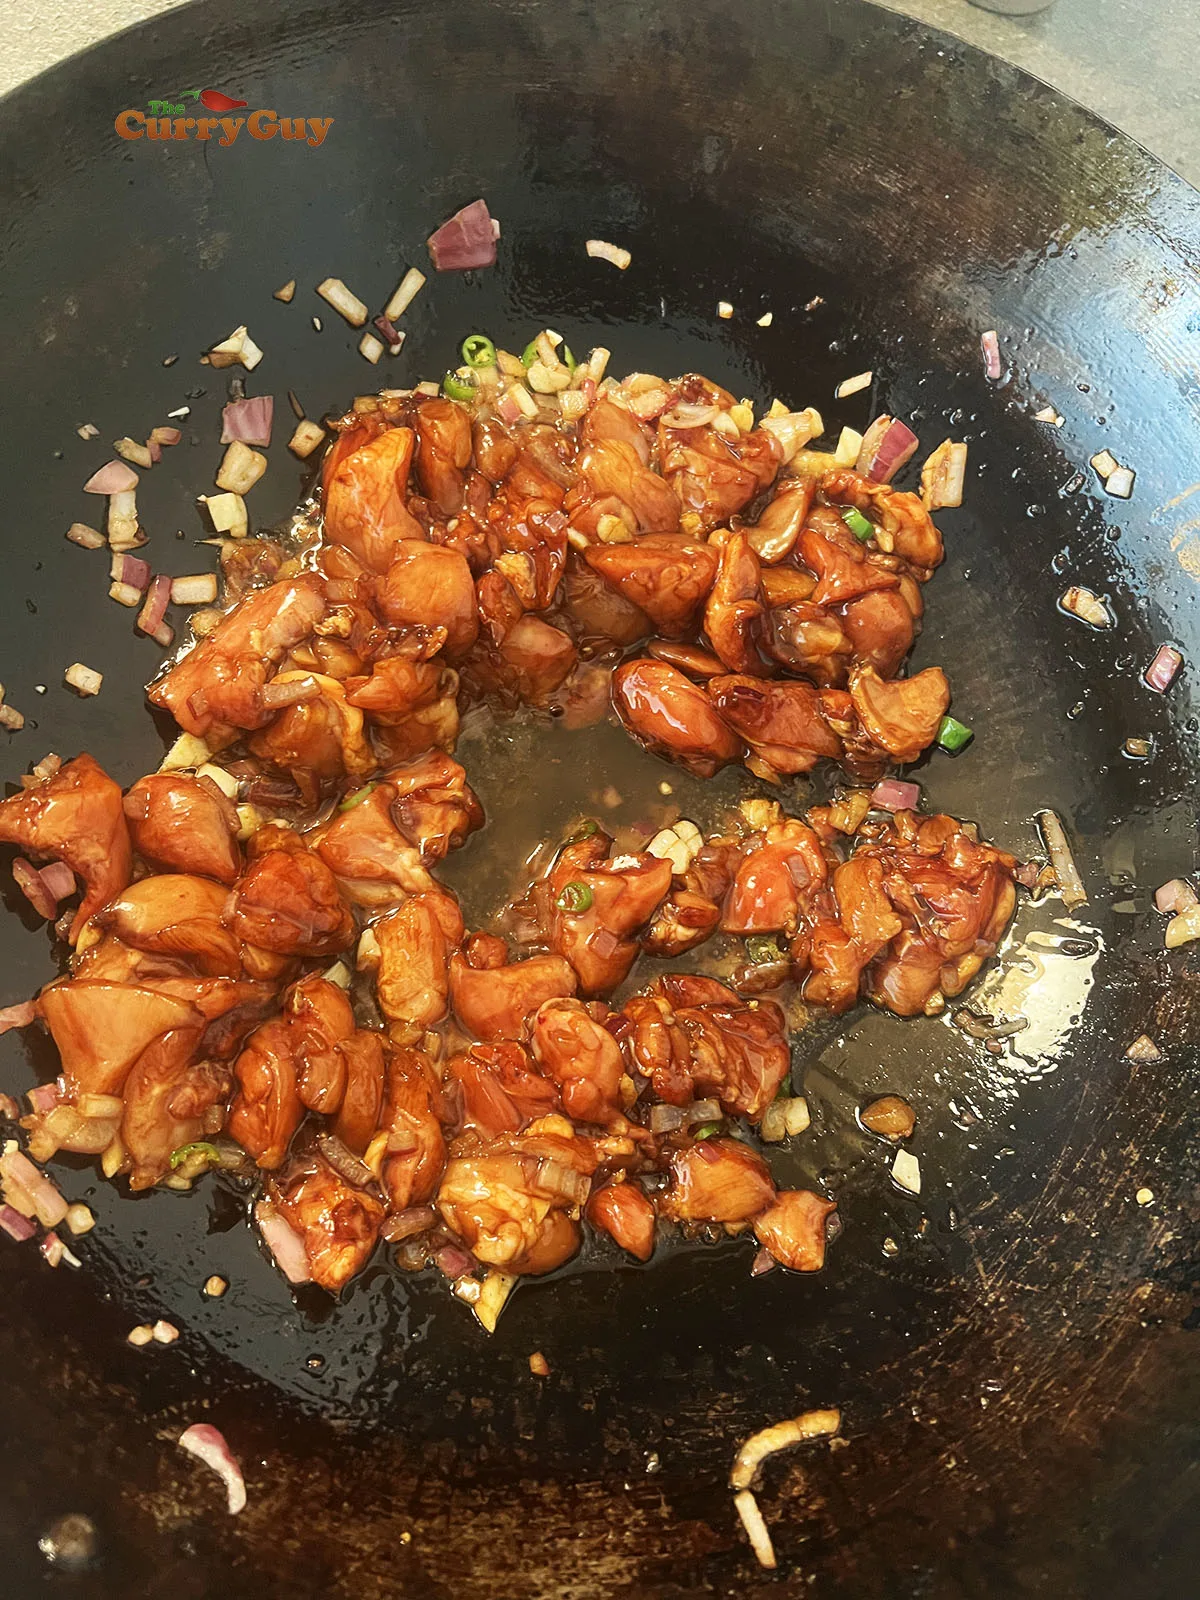 Adding chicken to the wok